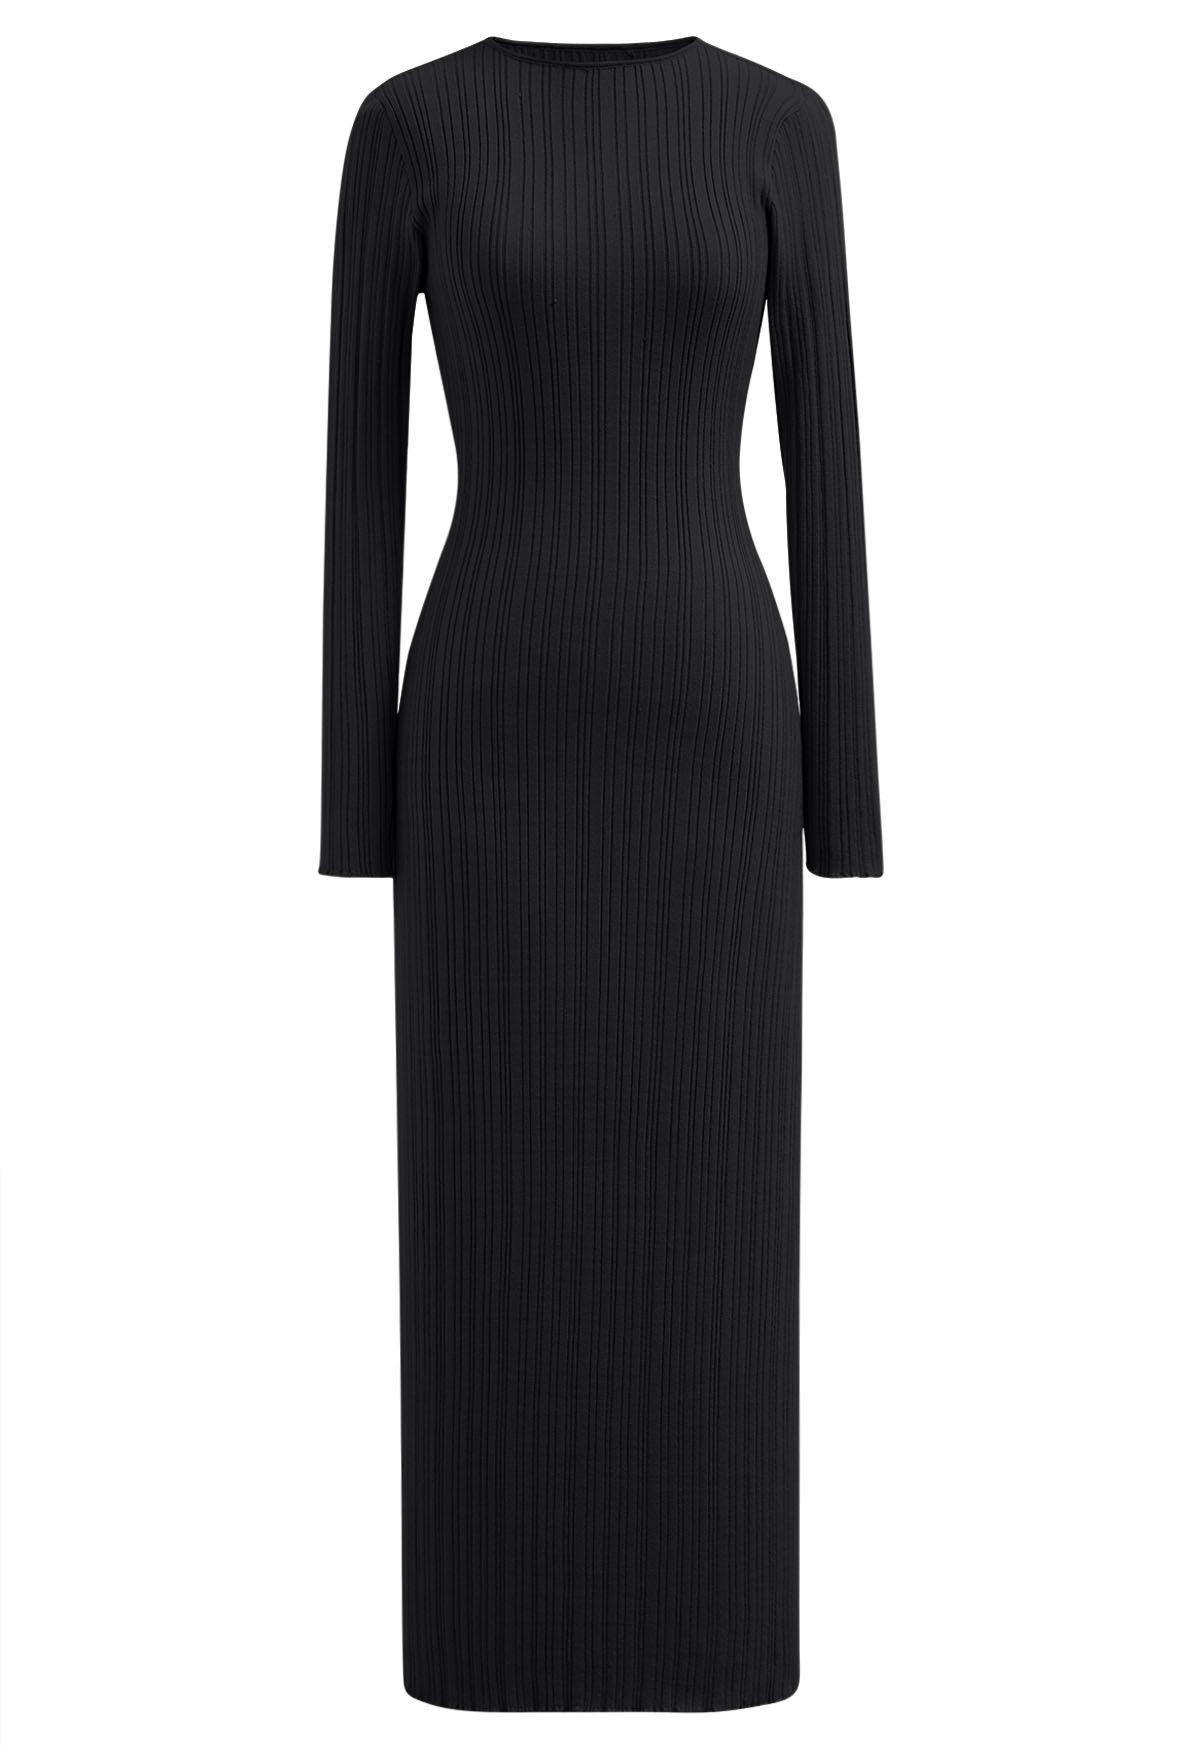 فستان ماكسي مخطط ومتماسك باللون الأسود